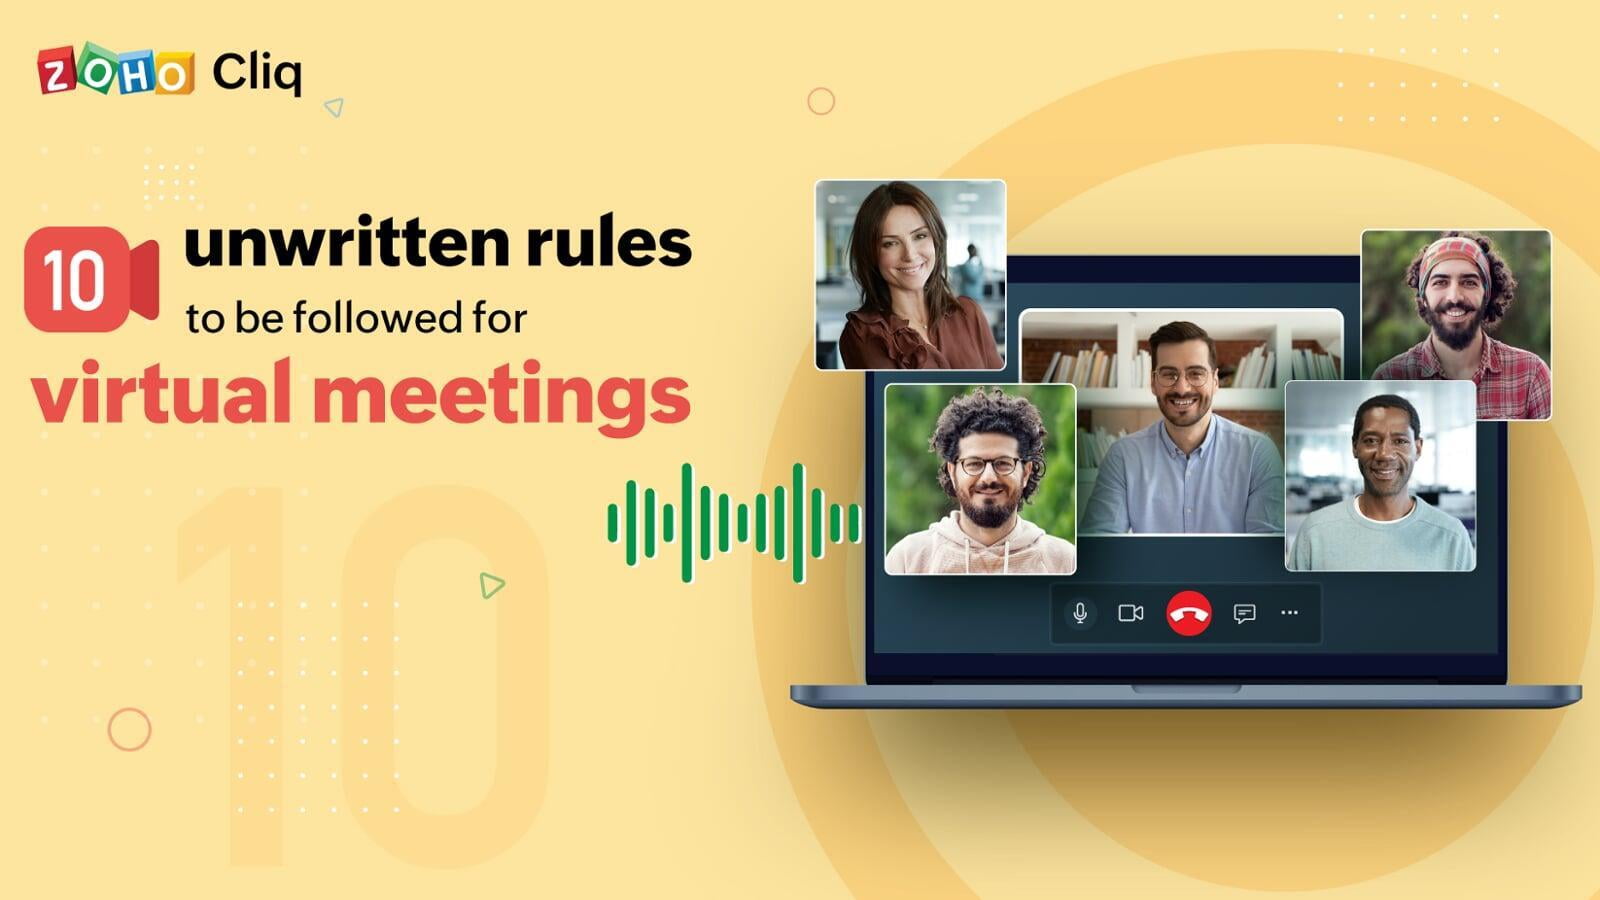 Desať nepísaných pravidiel pre virtuálne stretnutia